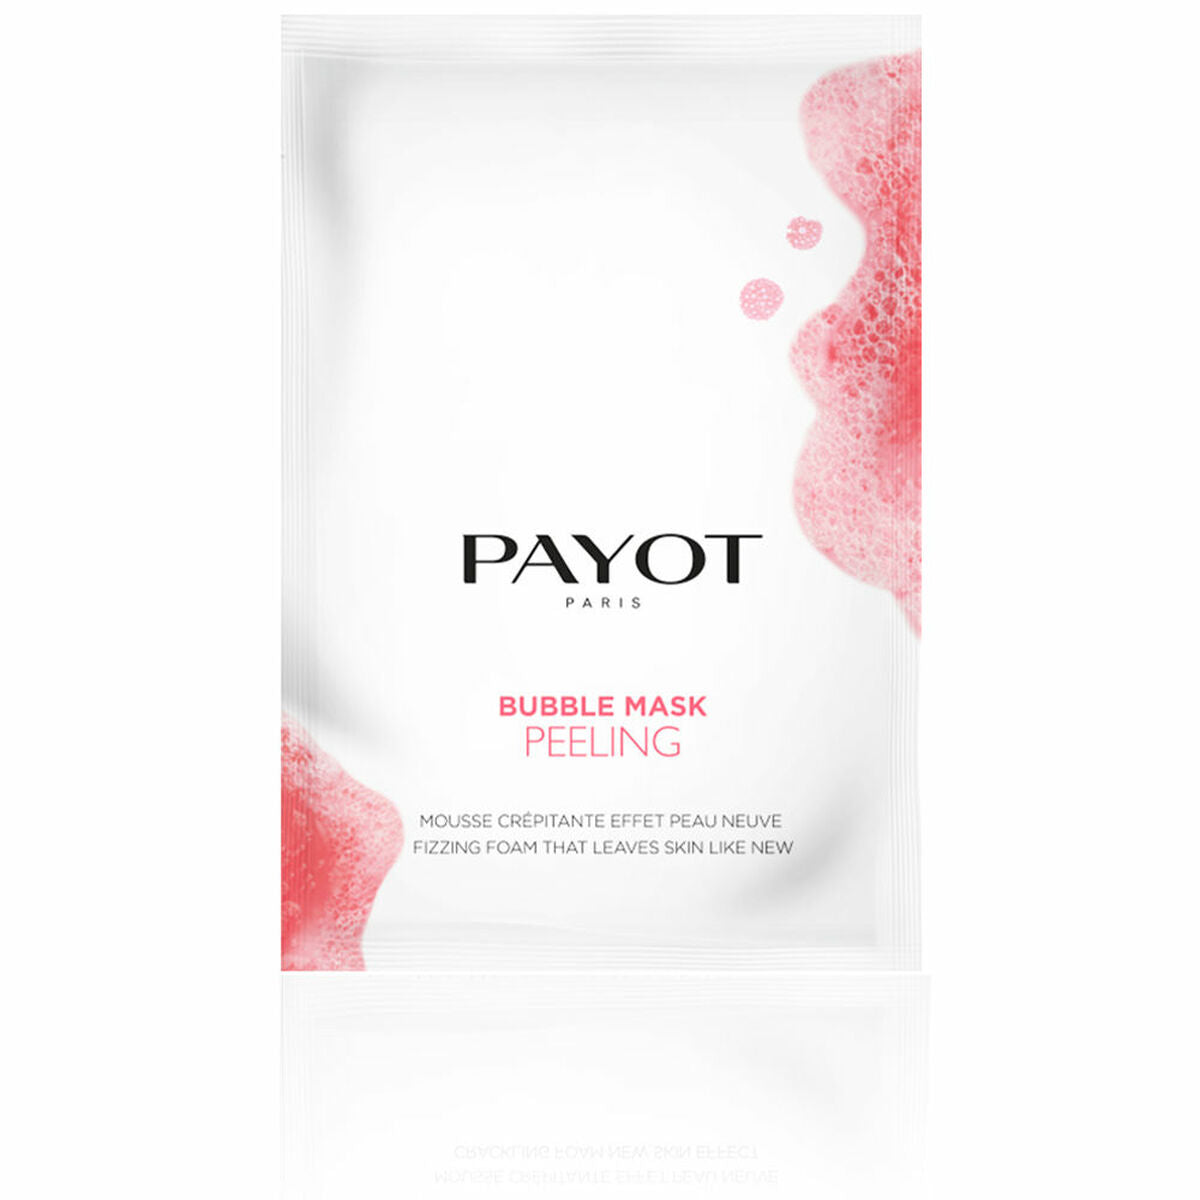 Gesichtsmaske Payot Bubble Mask Peeling (8 x 5 ml)